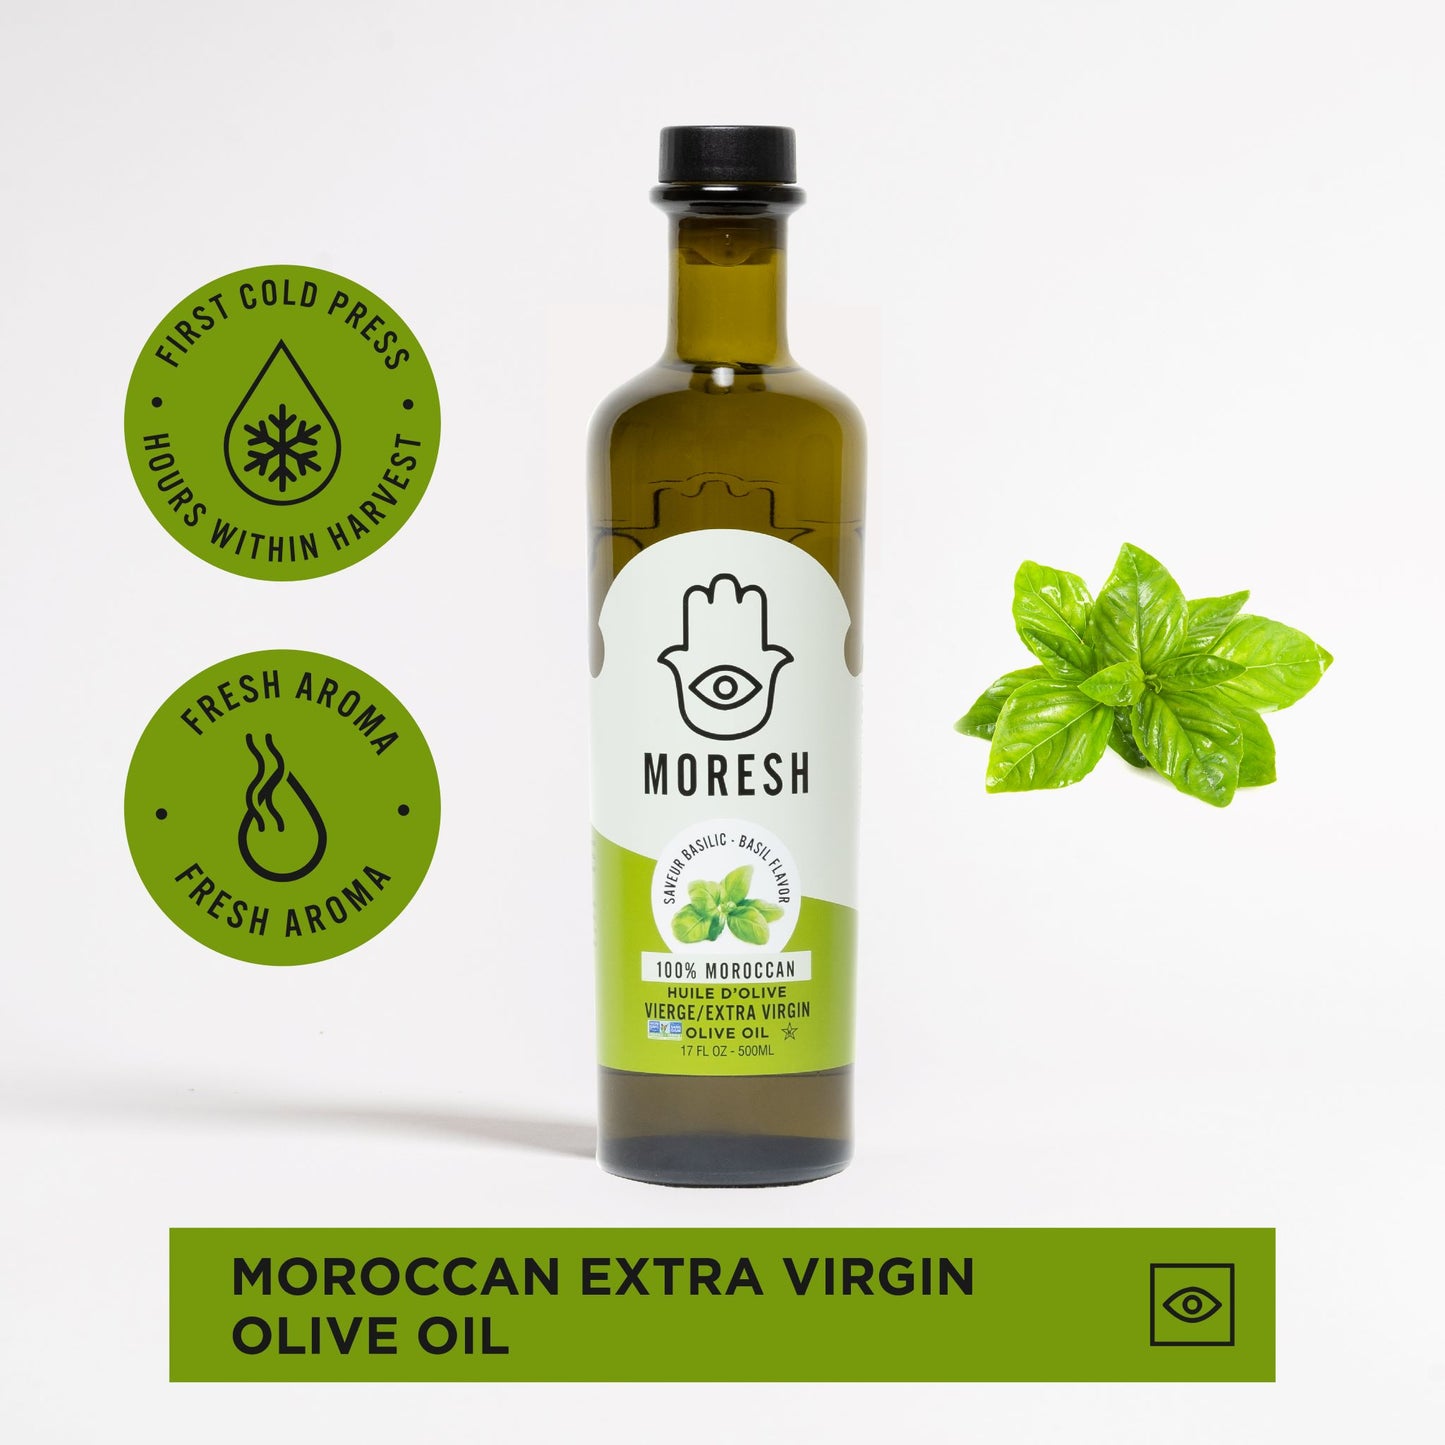 
                  
                    Moresh Basil Flavored Olive Oil
                  
                